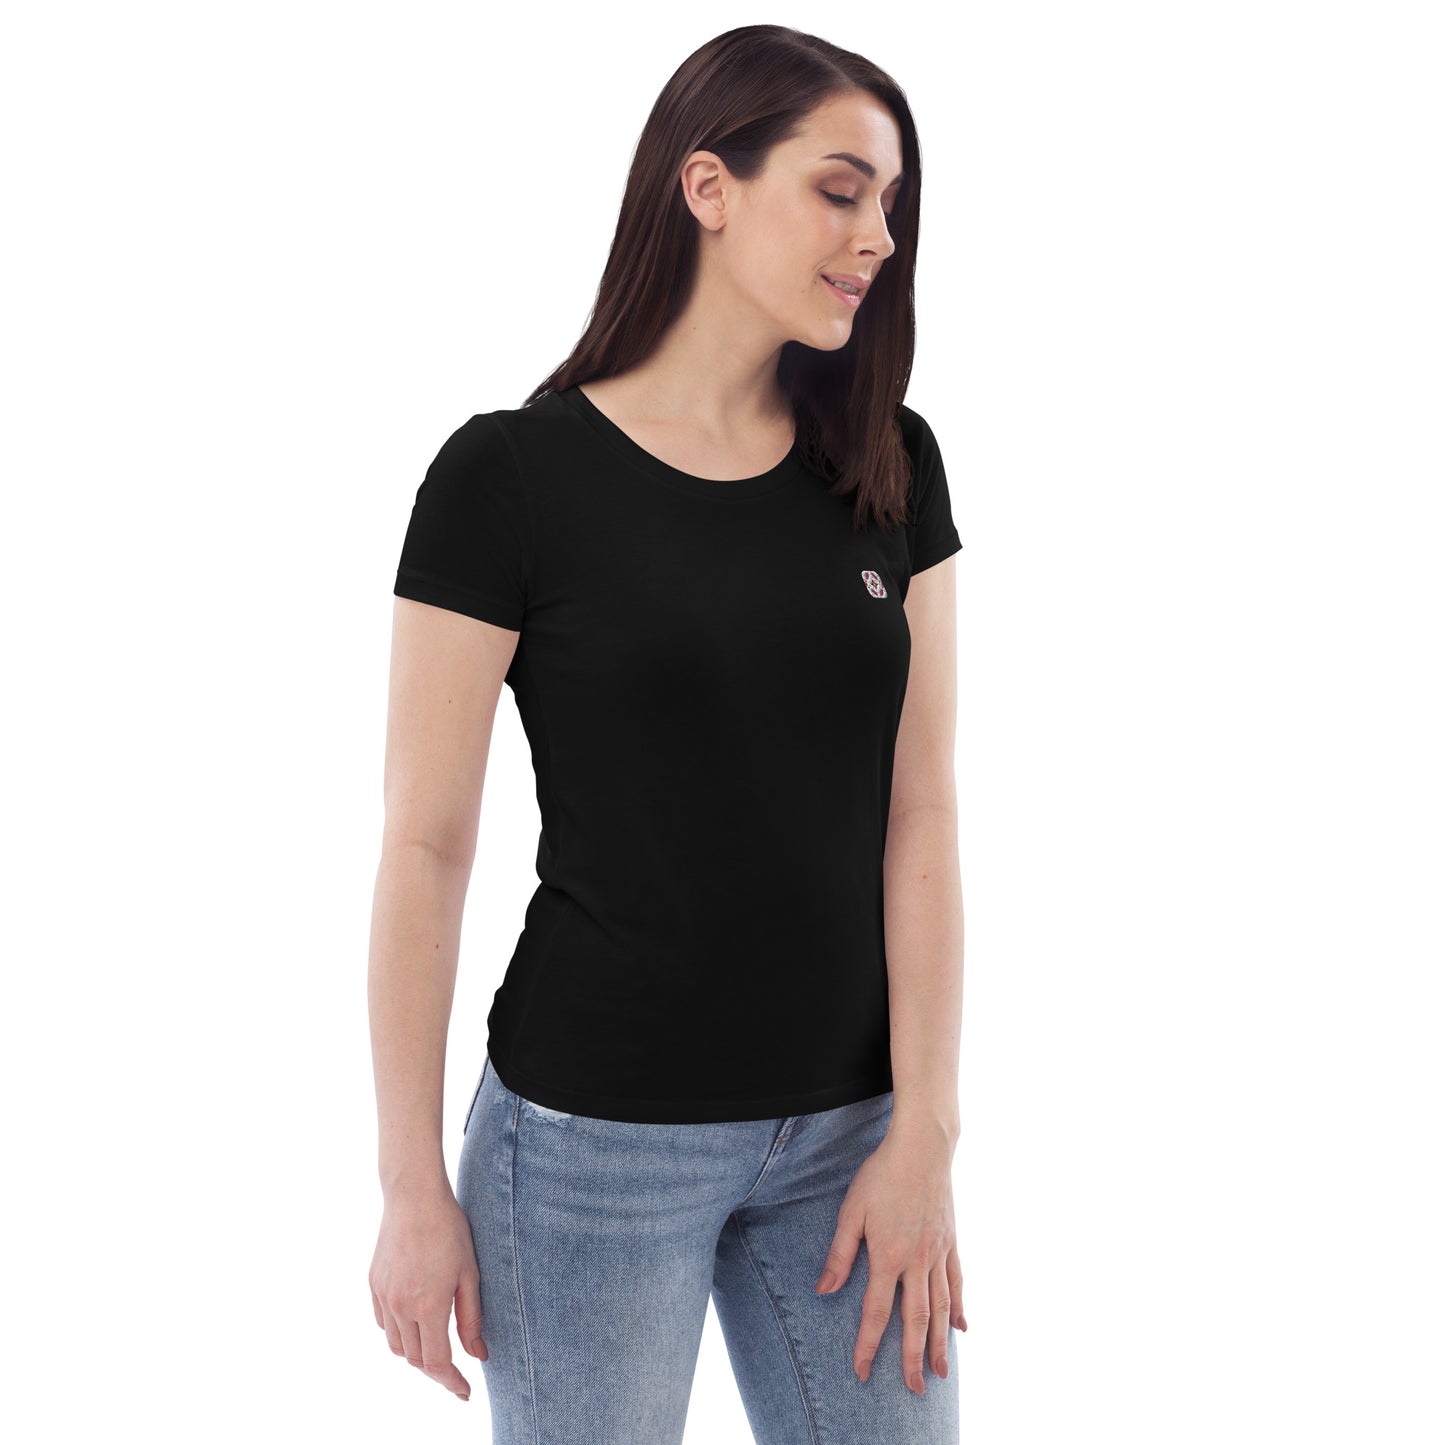 Schwarzes T-Shirt aus Bio-Baumwolle im Bauhausstil mit Frühlingsvögeln gestickt - Damen